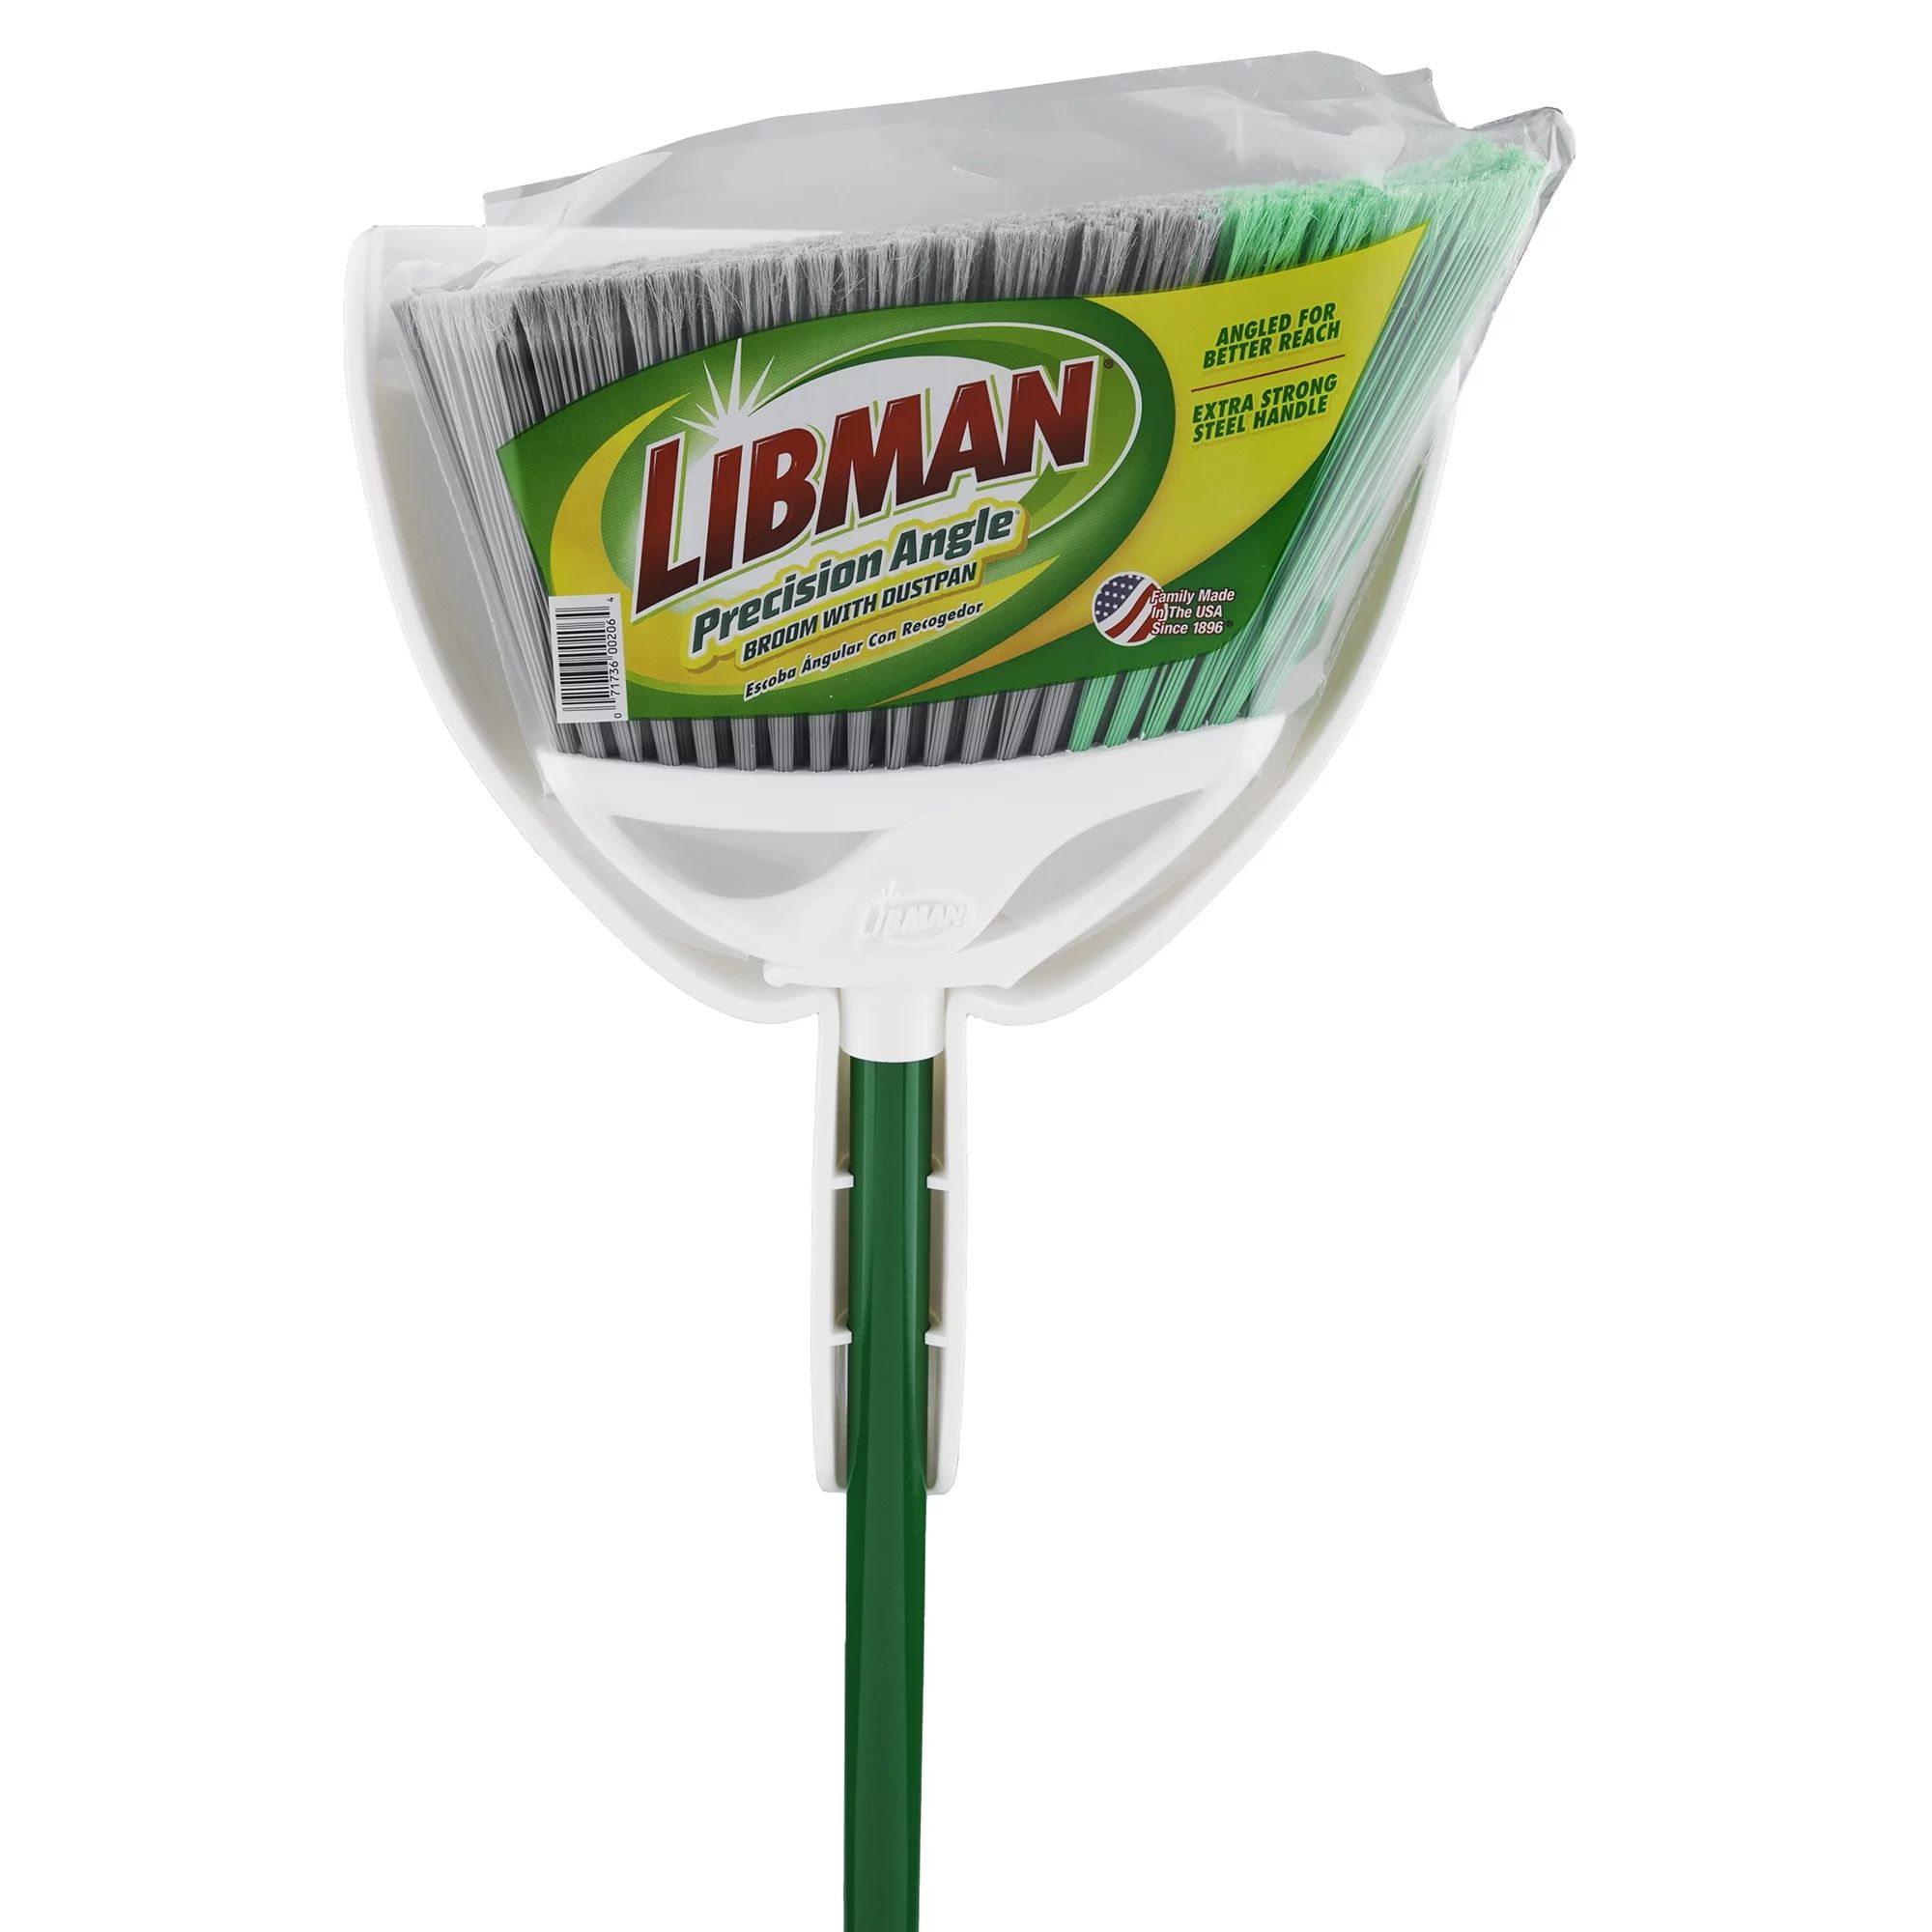 Libman Precision Angle Broom with Dustpan - Walmart.com | Walmart (US)